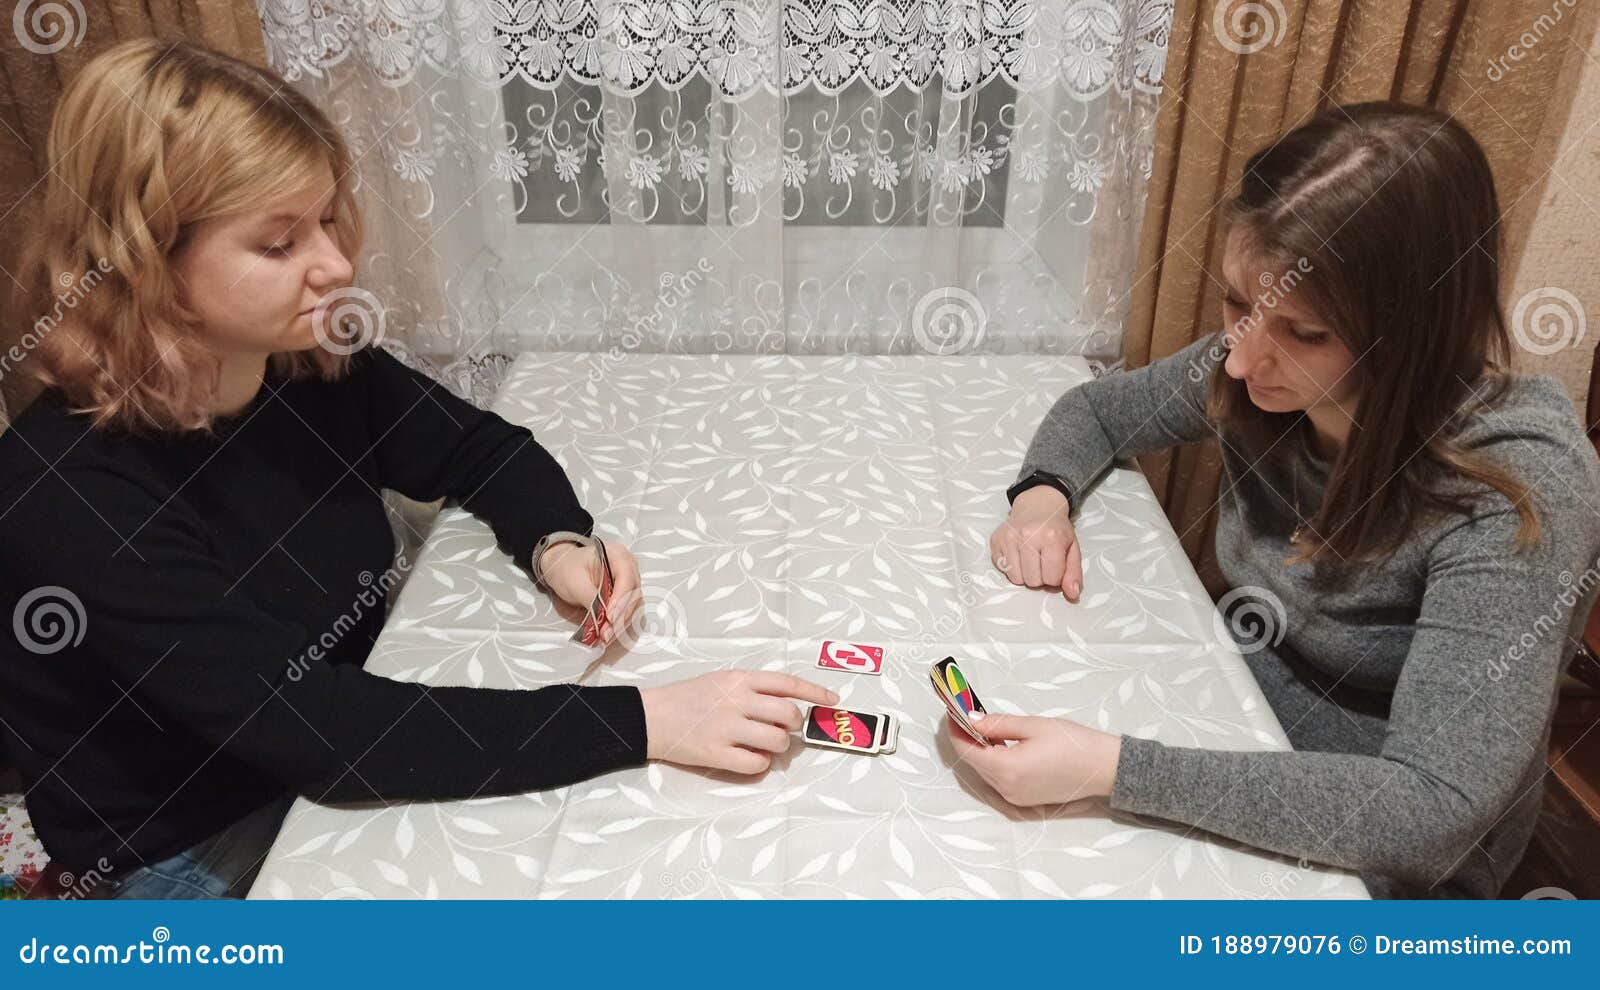 Как девочки играли в карты майскоре 1xbet